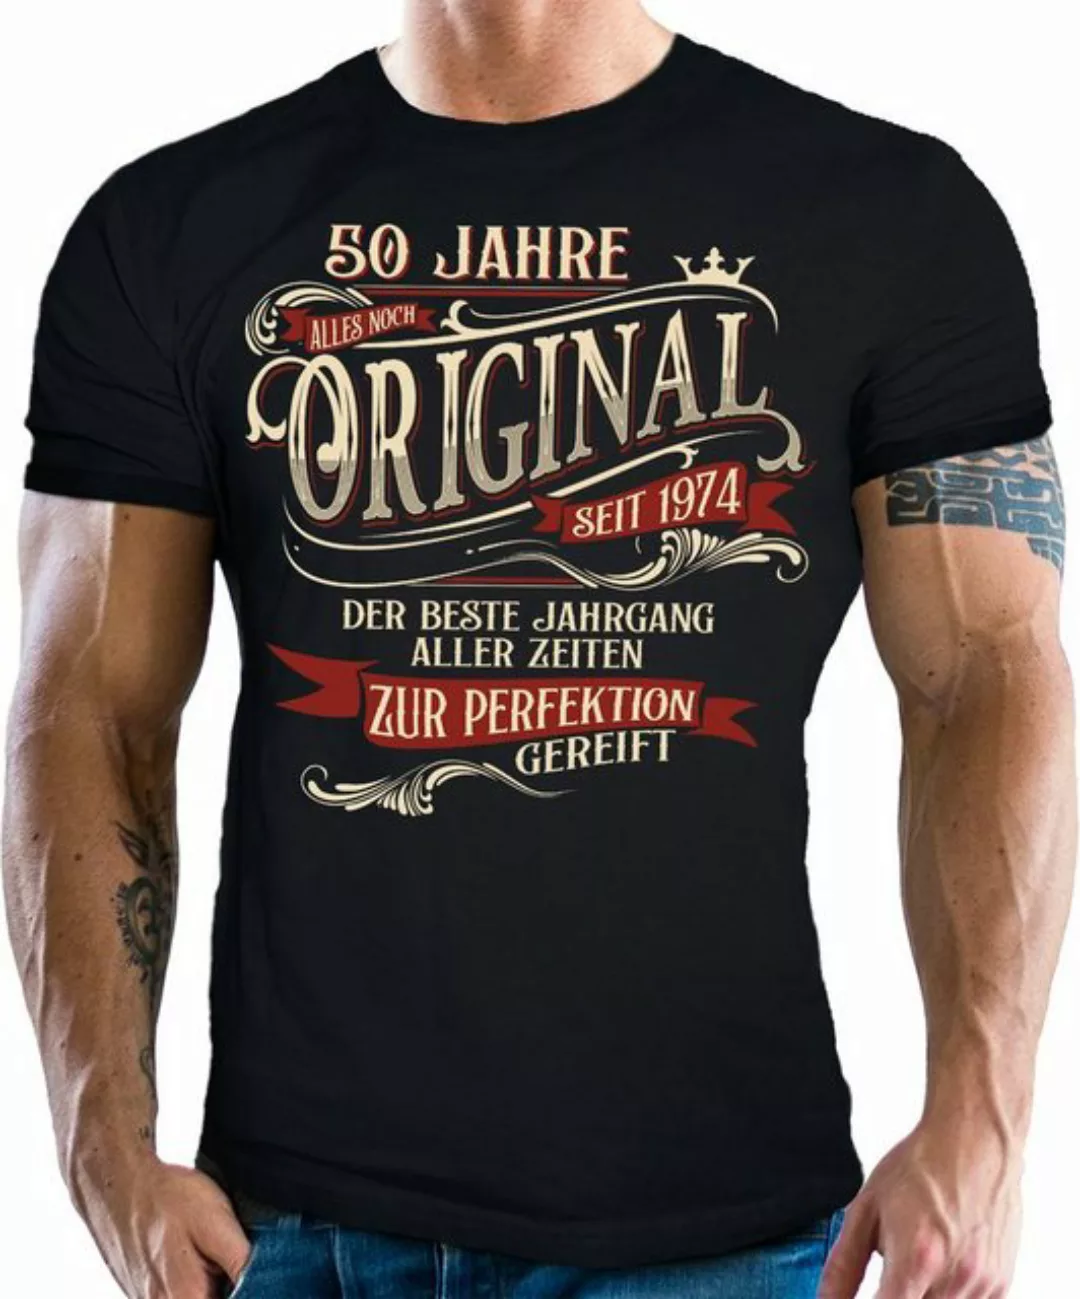 LOBO NEGRO® T-Shirt als Geschenk zum 50. Geburtstag - zur Perfektion gereif günstig online kaufen